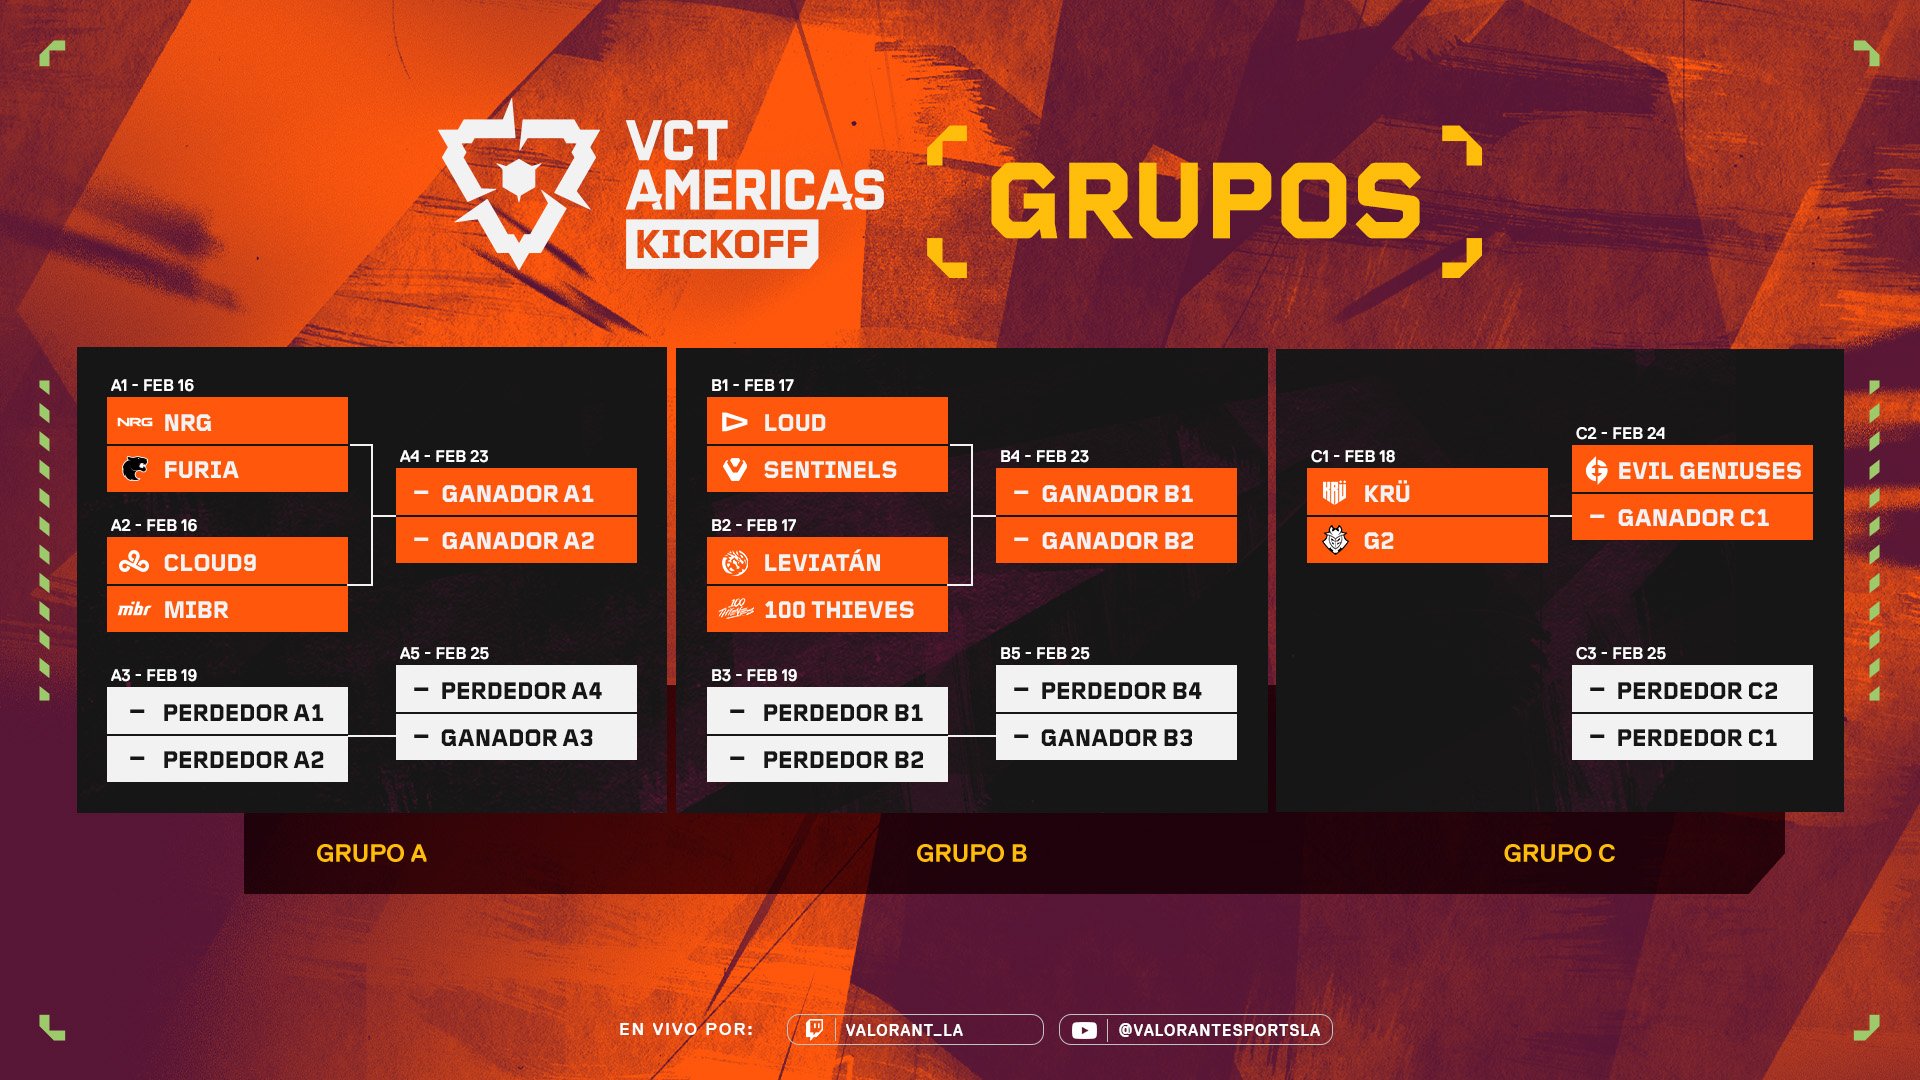 Distribución de la fase de grupos del VCT Americas Kickoff